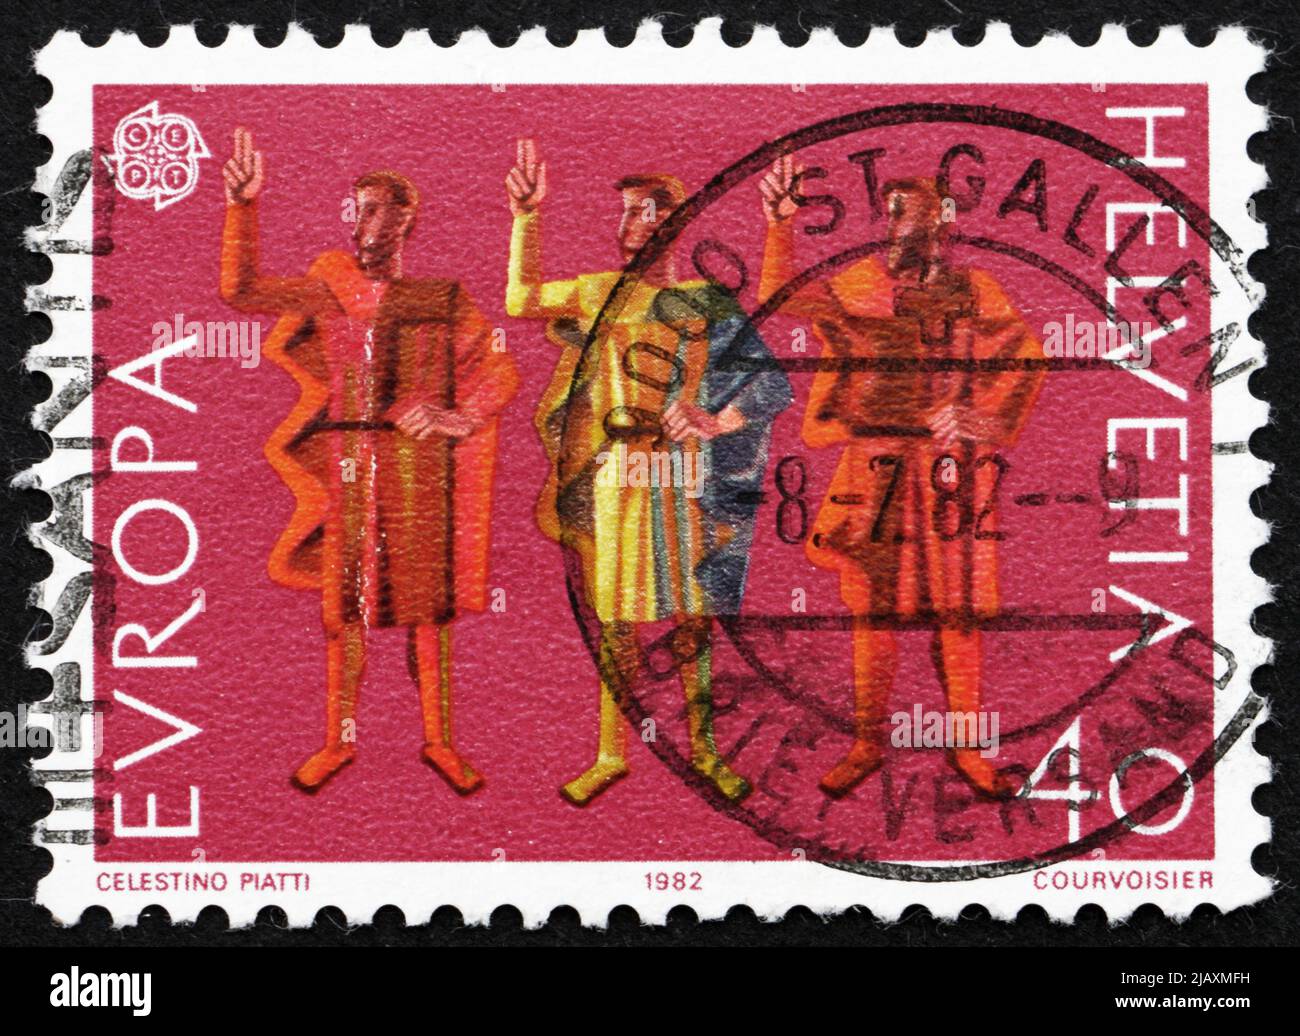 SVIZZERA - CIRCA 1982: Un francobollo stampato in Svizzera mostra il giuramento della festa eterna, circa 1982 Foto Stock